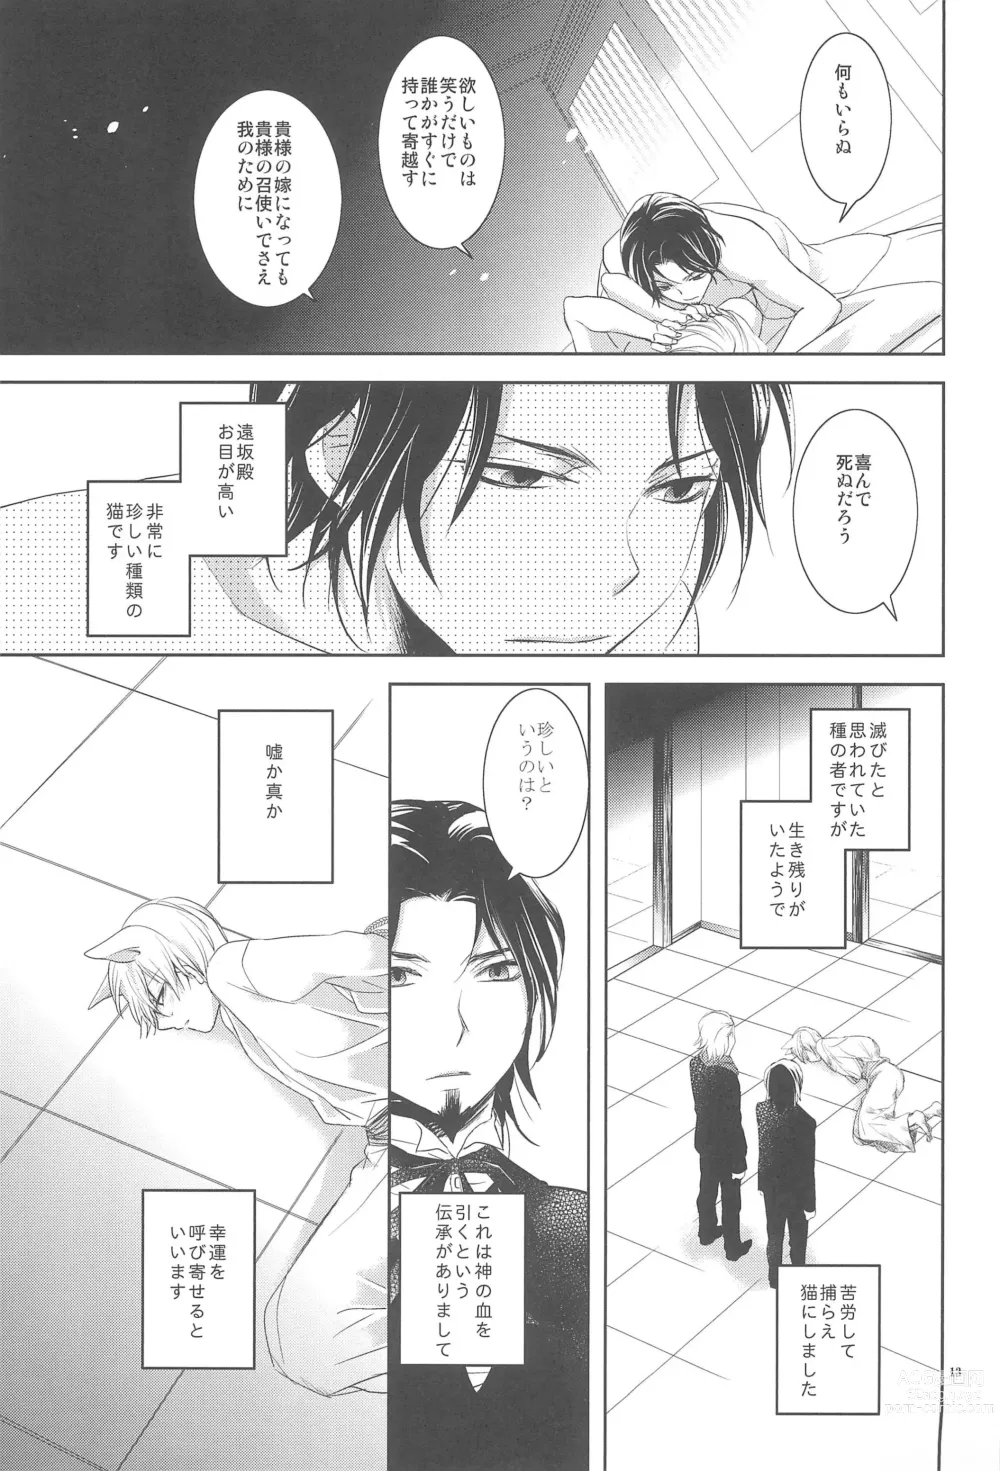 Page 15 of doujinshi Omise no Neko 3